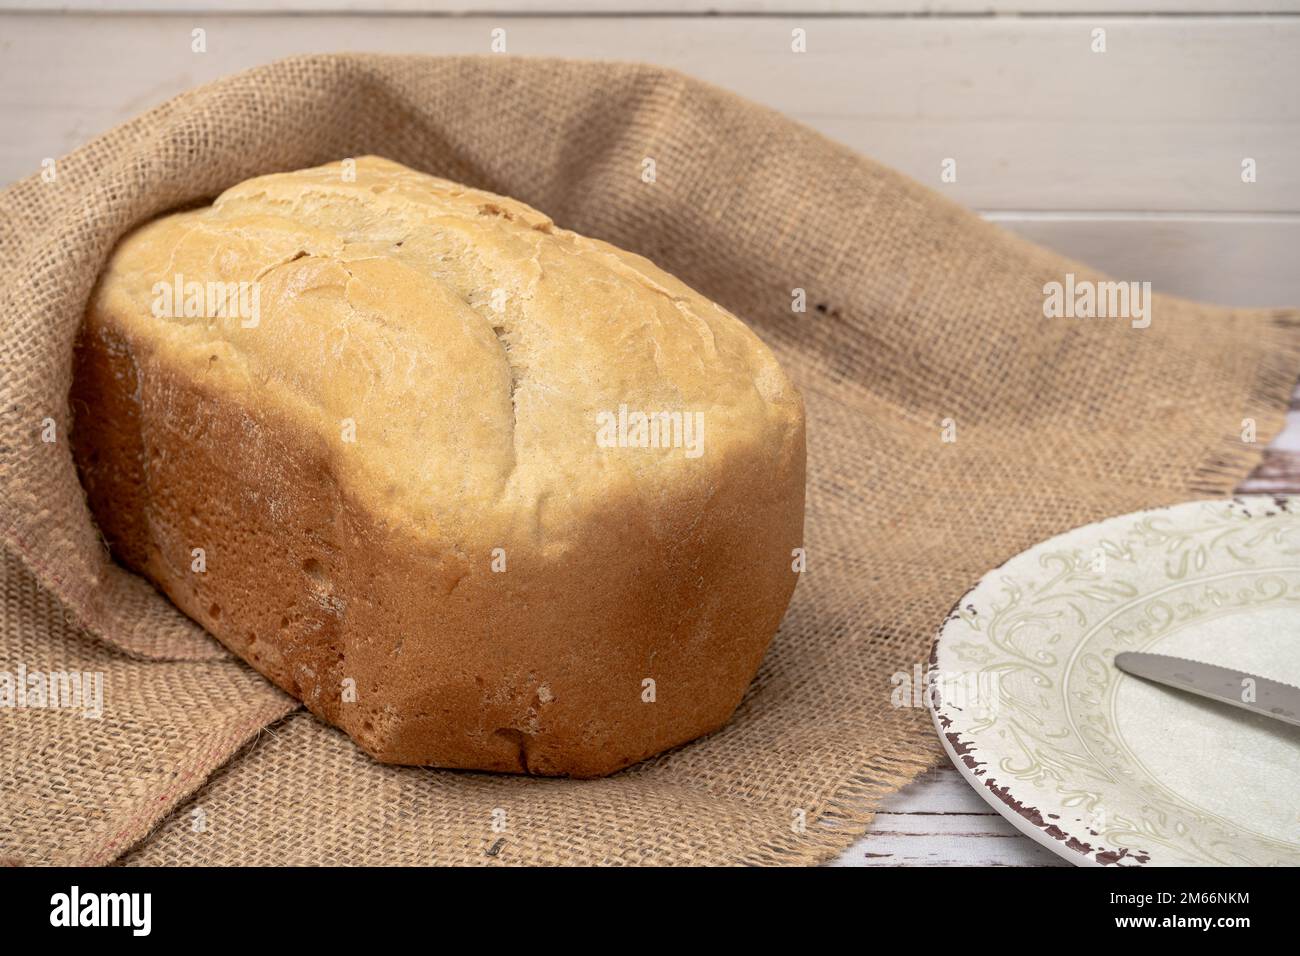 Ein hausgemachtes Brot, das mit einer Brotmaschine gemacht wurde. Stockfoto